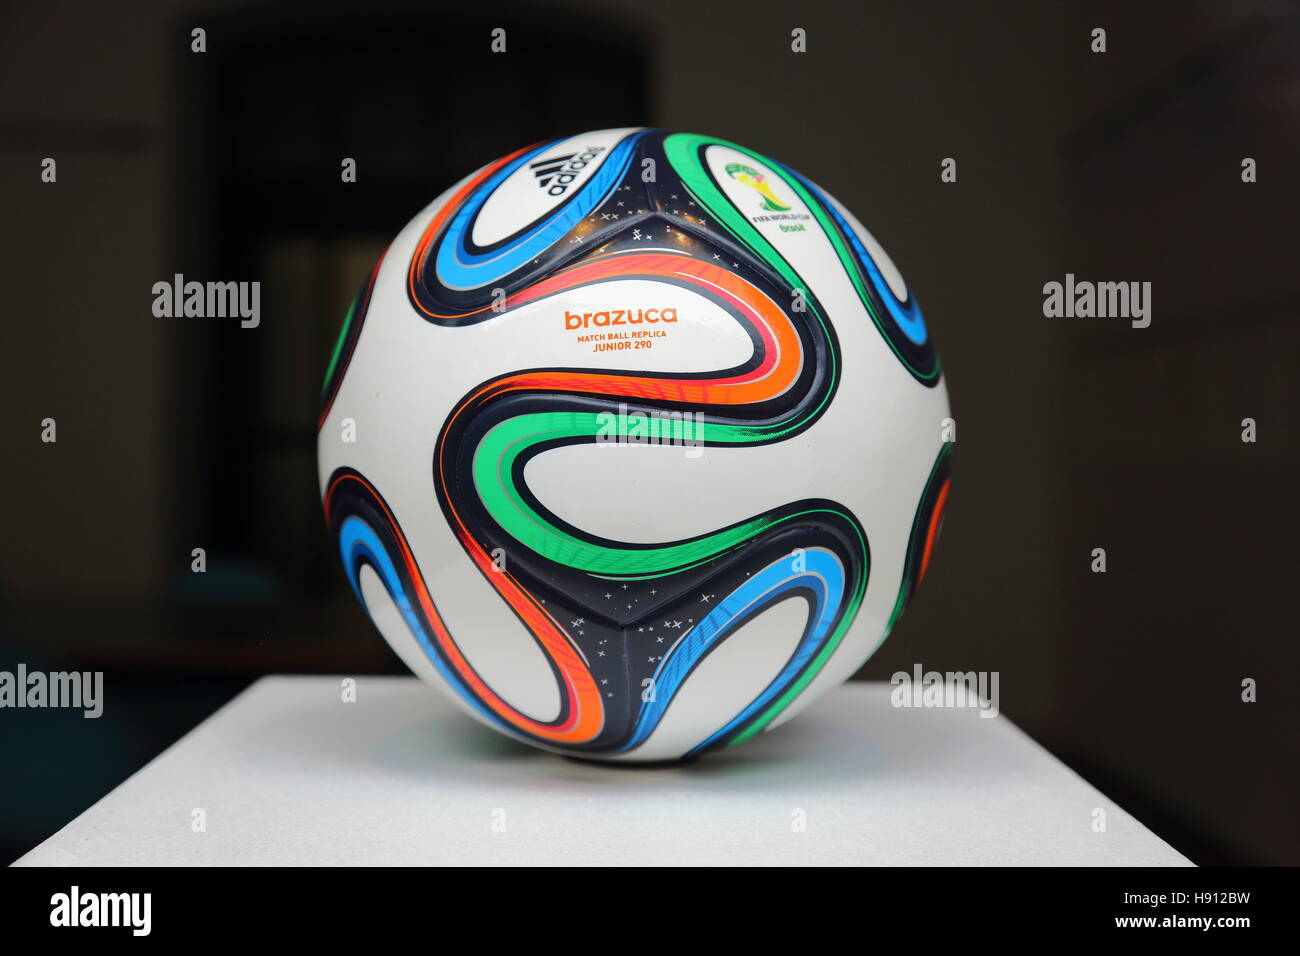 Adidas brazuca, el balón oficial de la FIFA 2014 Worldcup en Brasil  Fotografía de stock - Alamy